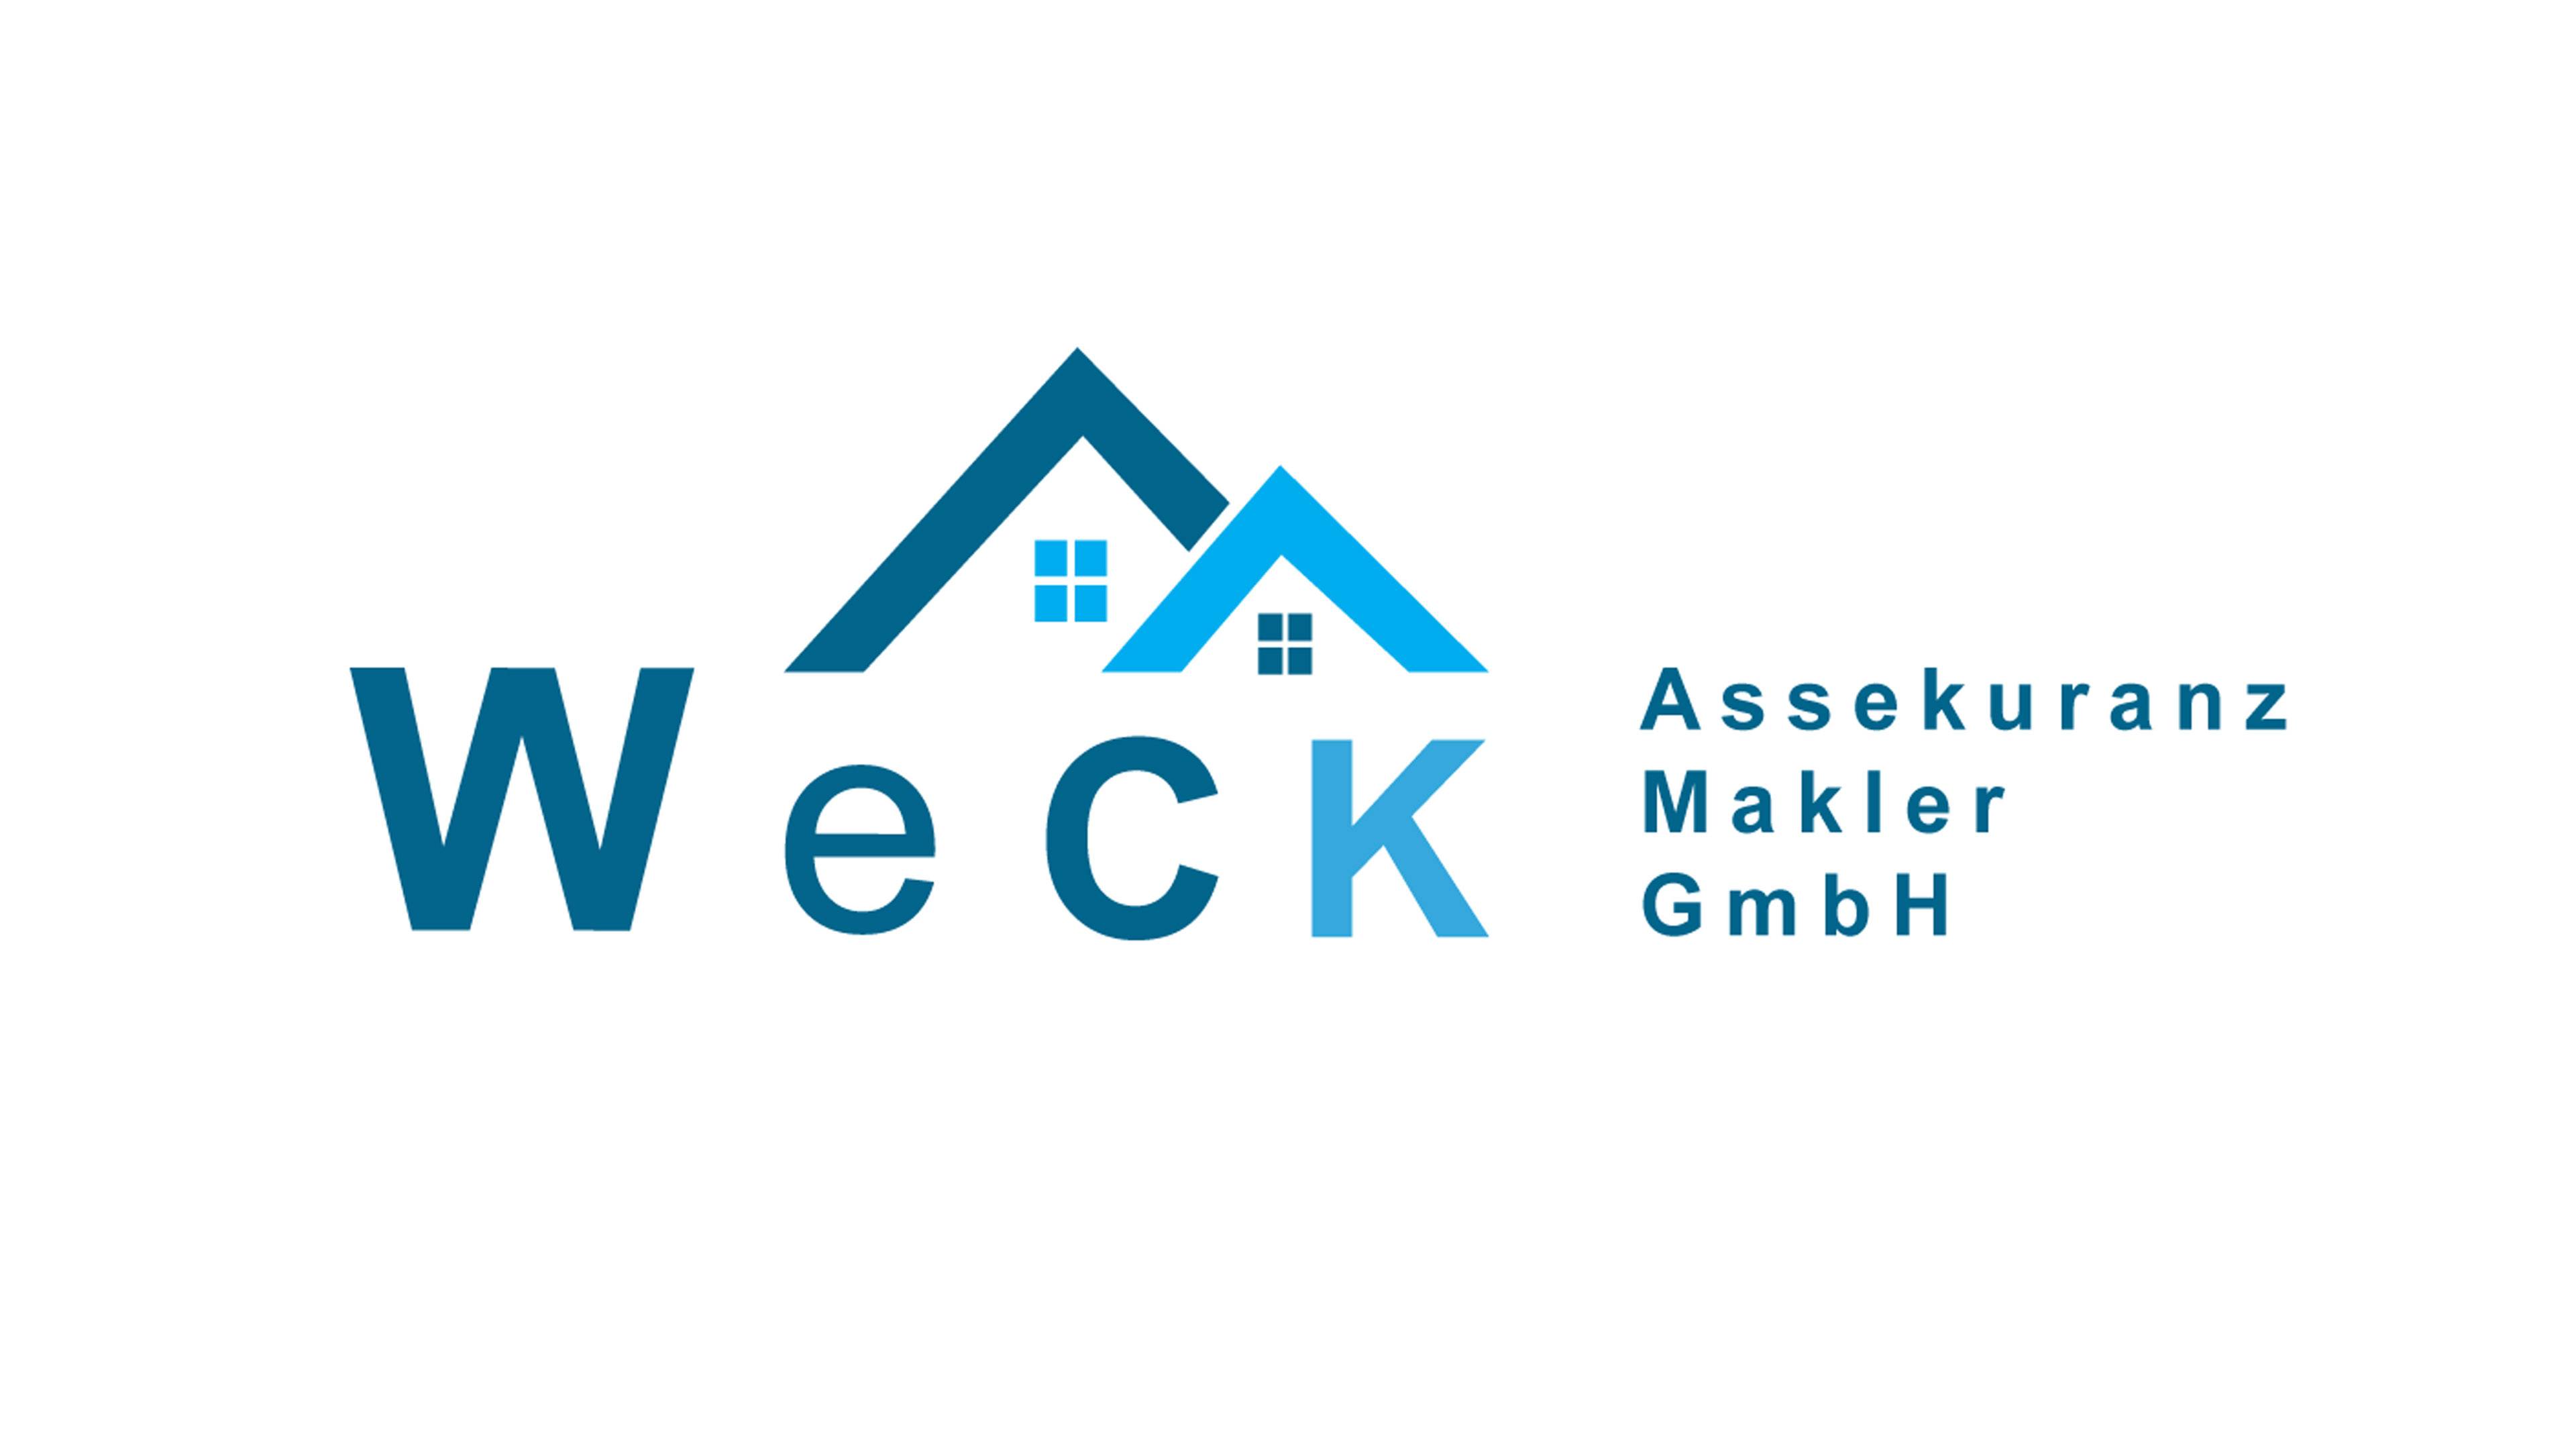 Bild 1 WeCK Assekuranz Makler GmbH in Warngau